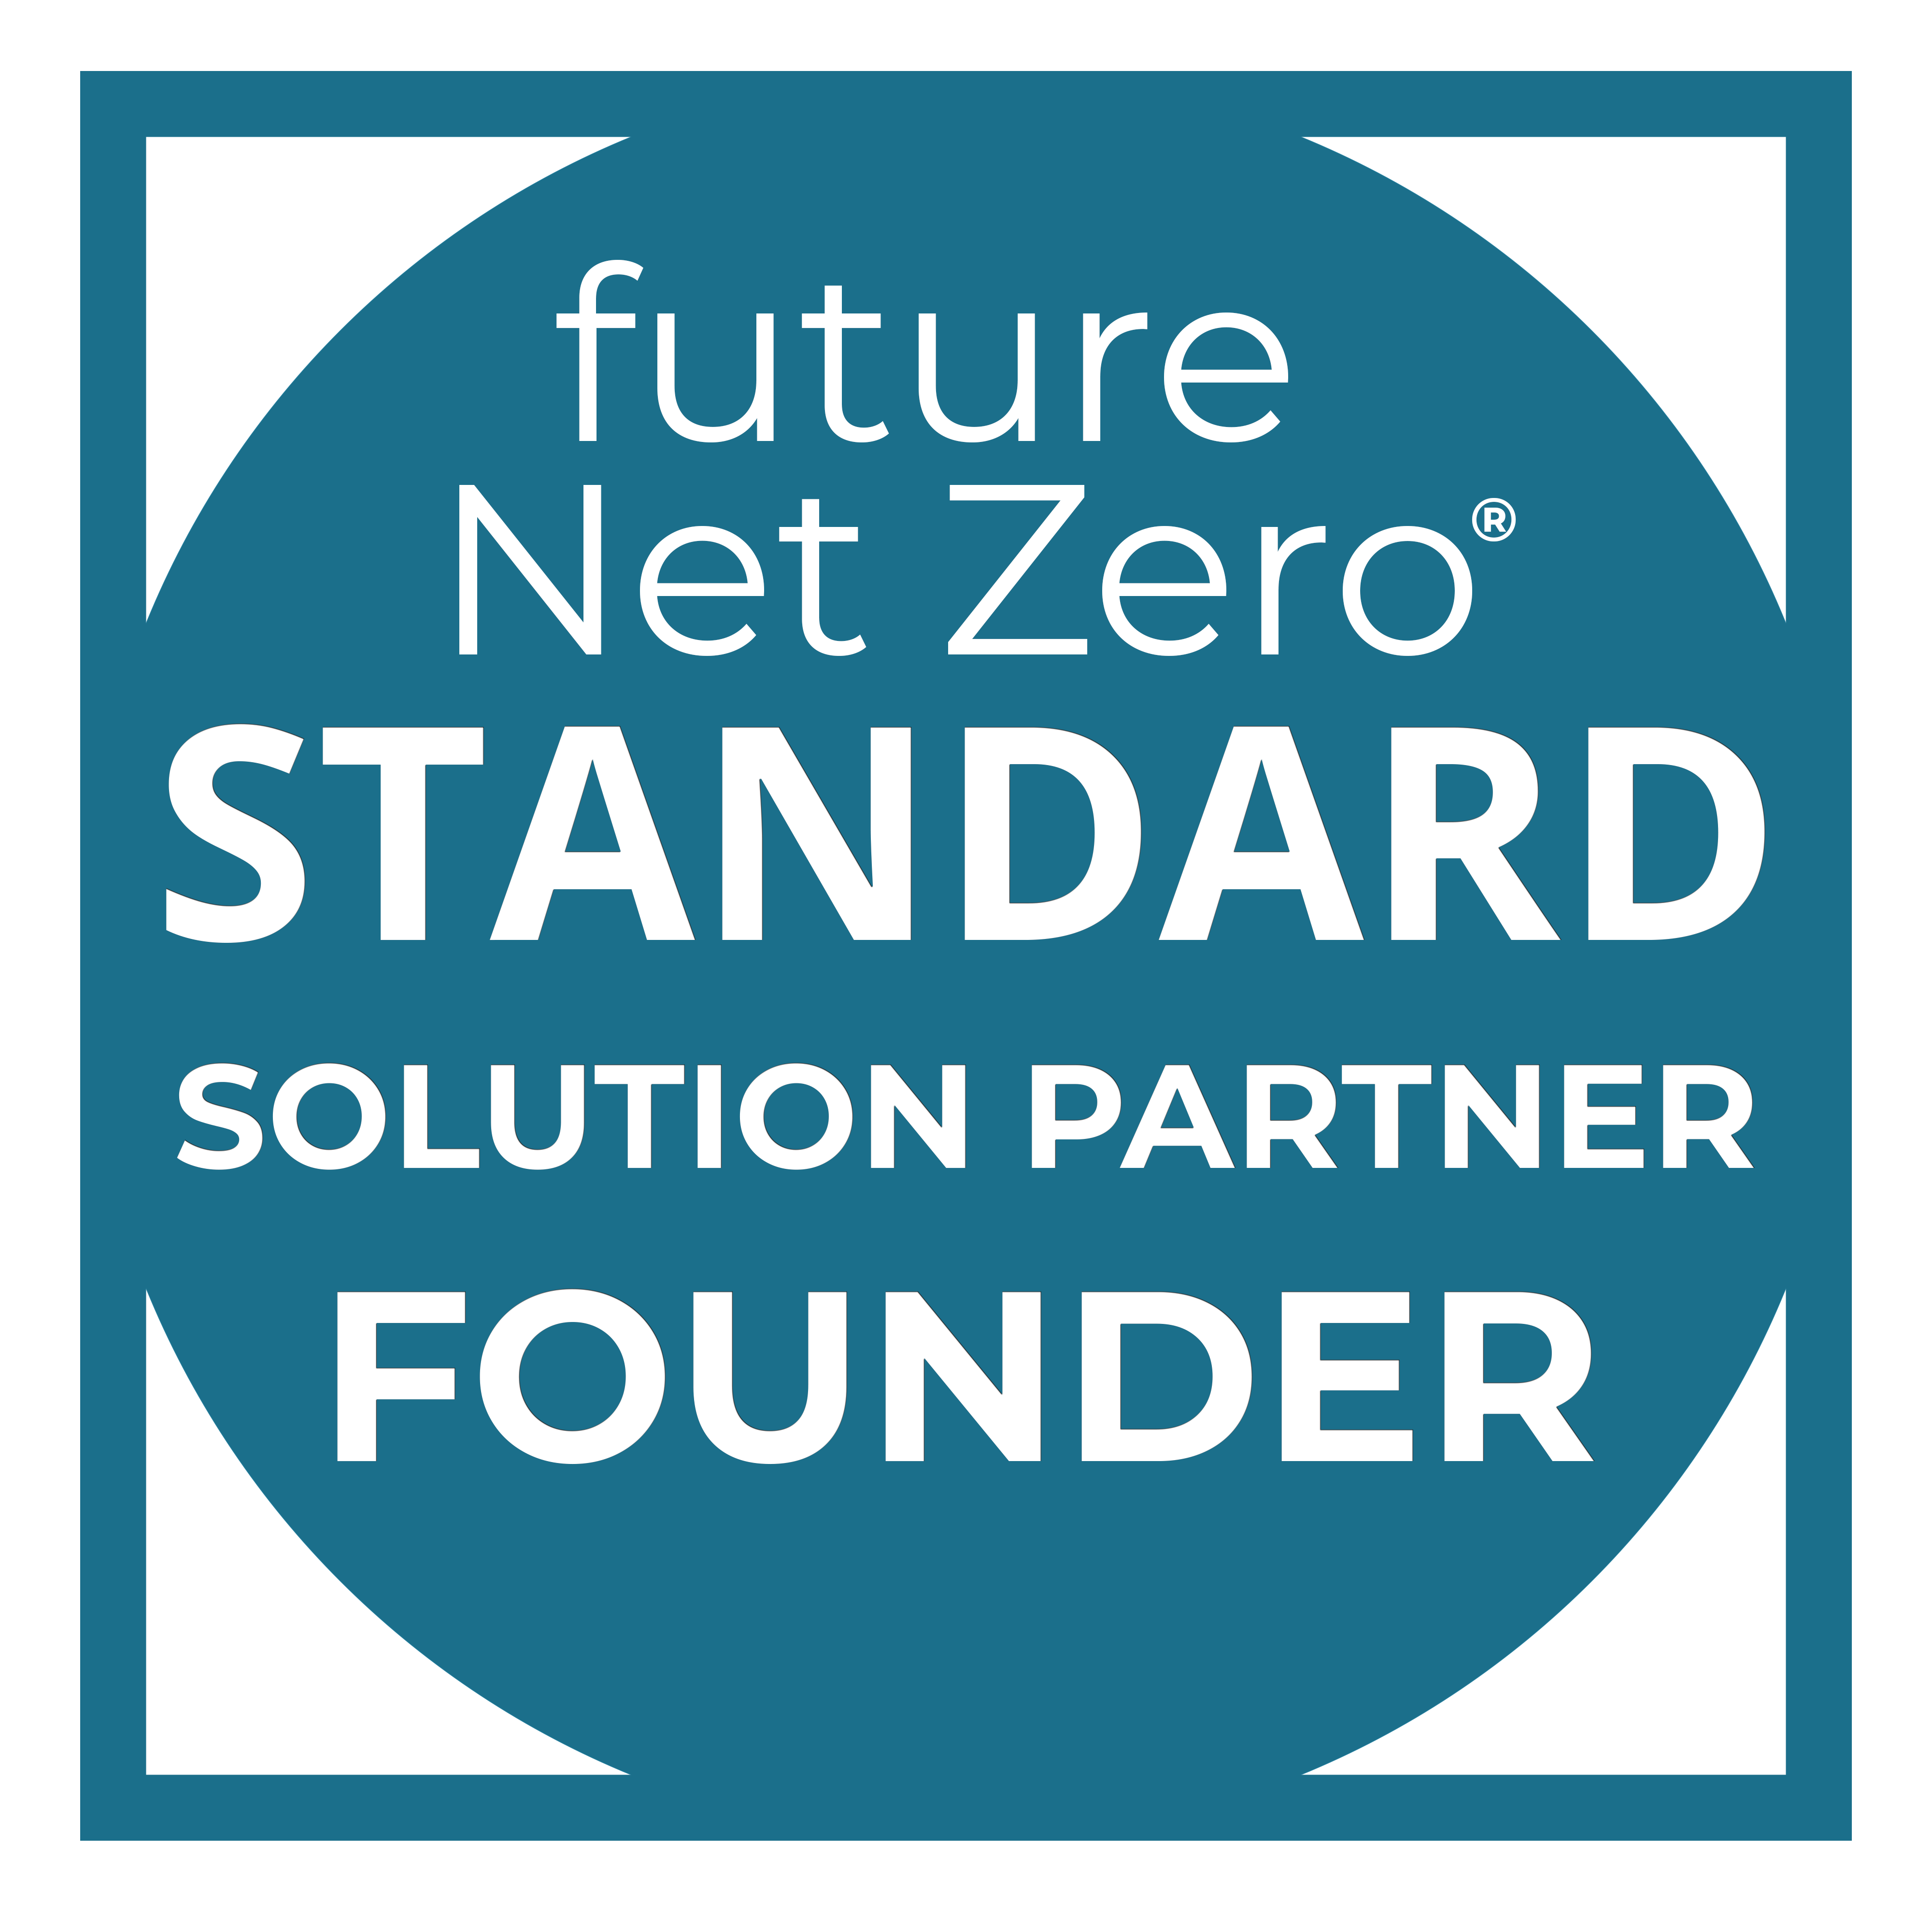 FNZ Standard Badge - Solution Partner Founder